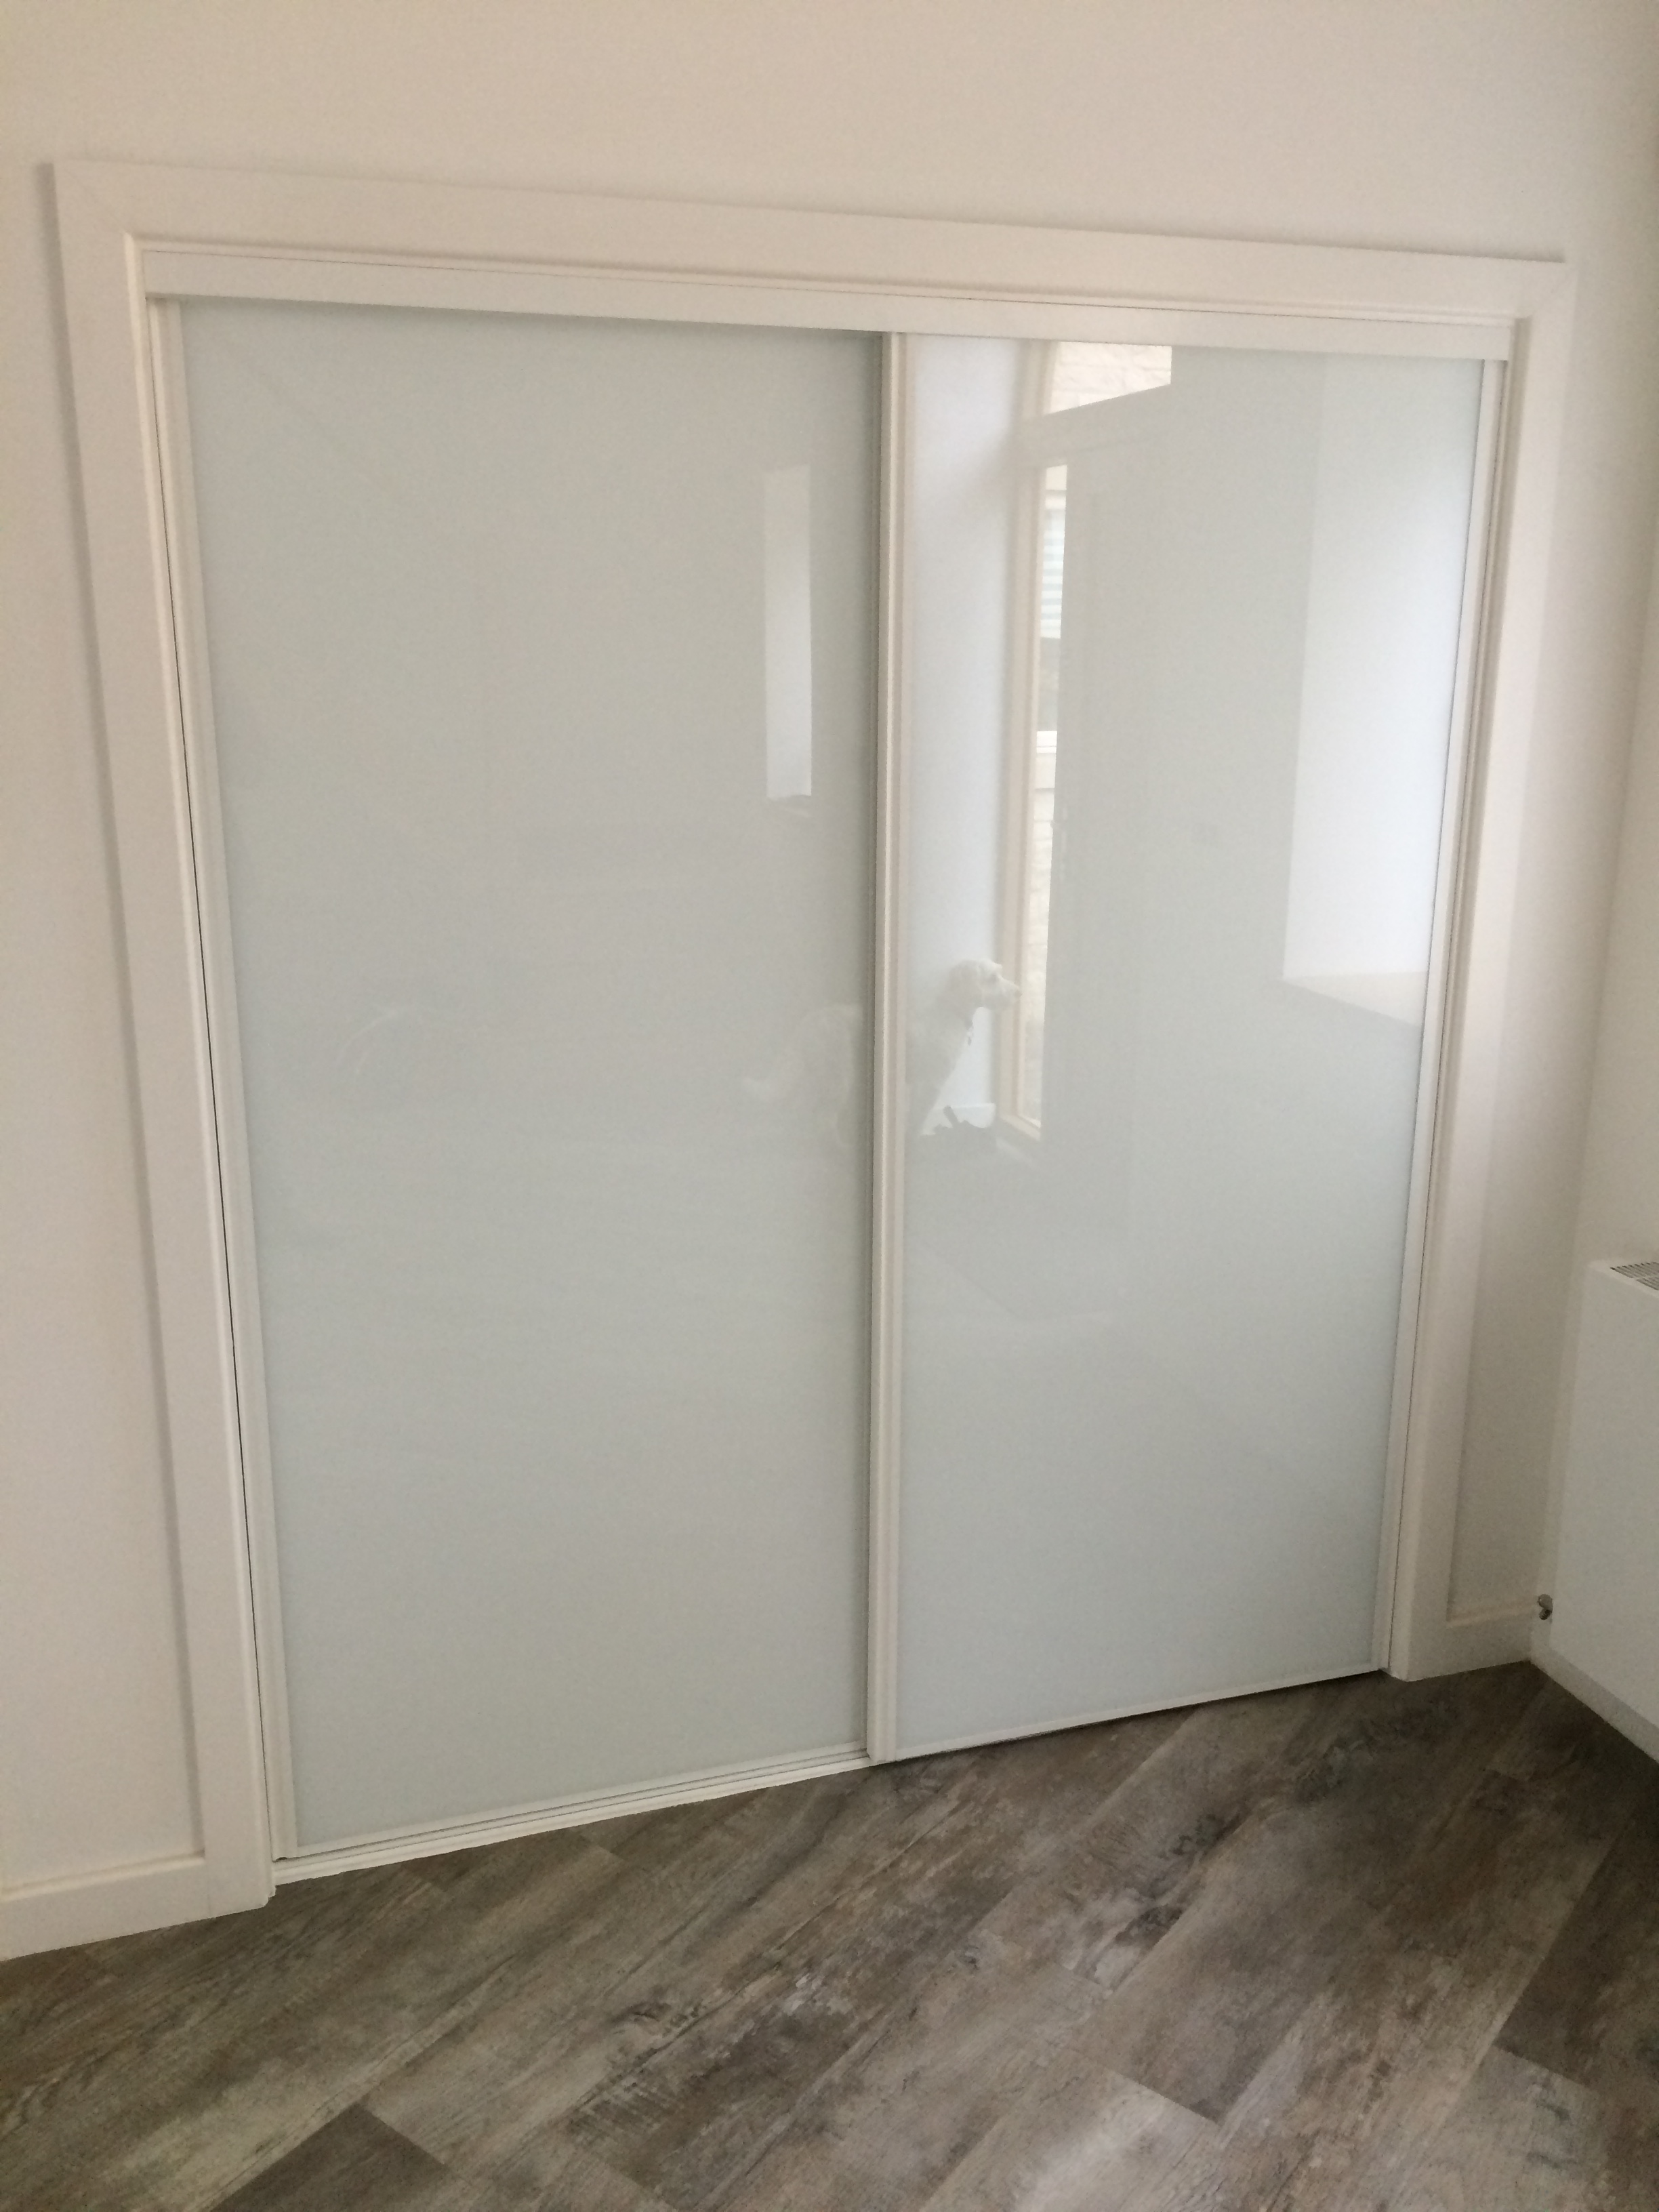 Sliding Door Unit - White Frame & Glass